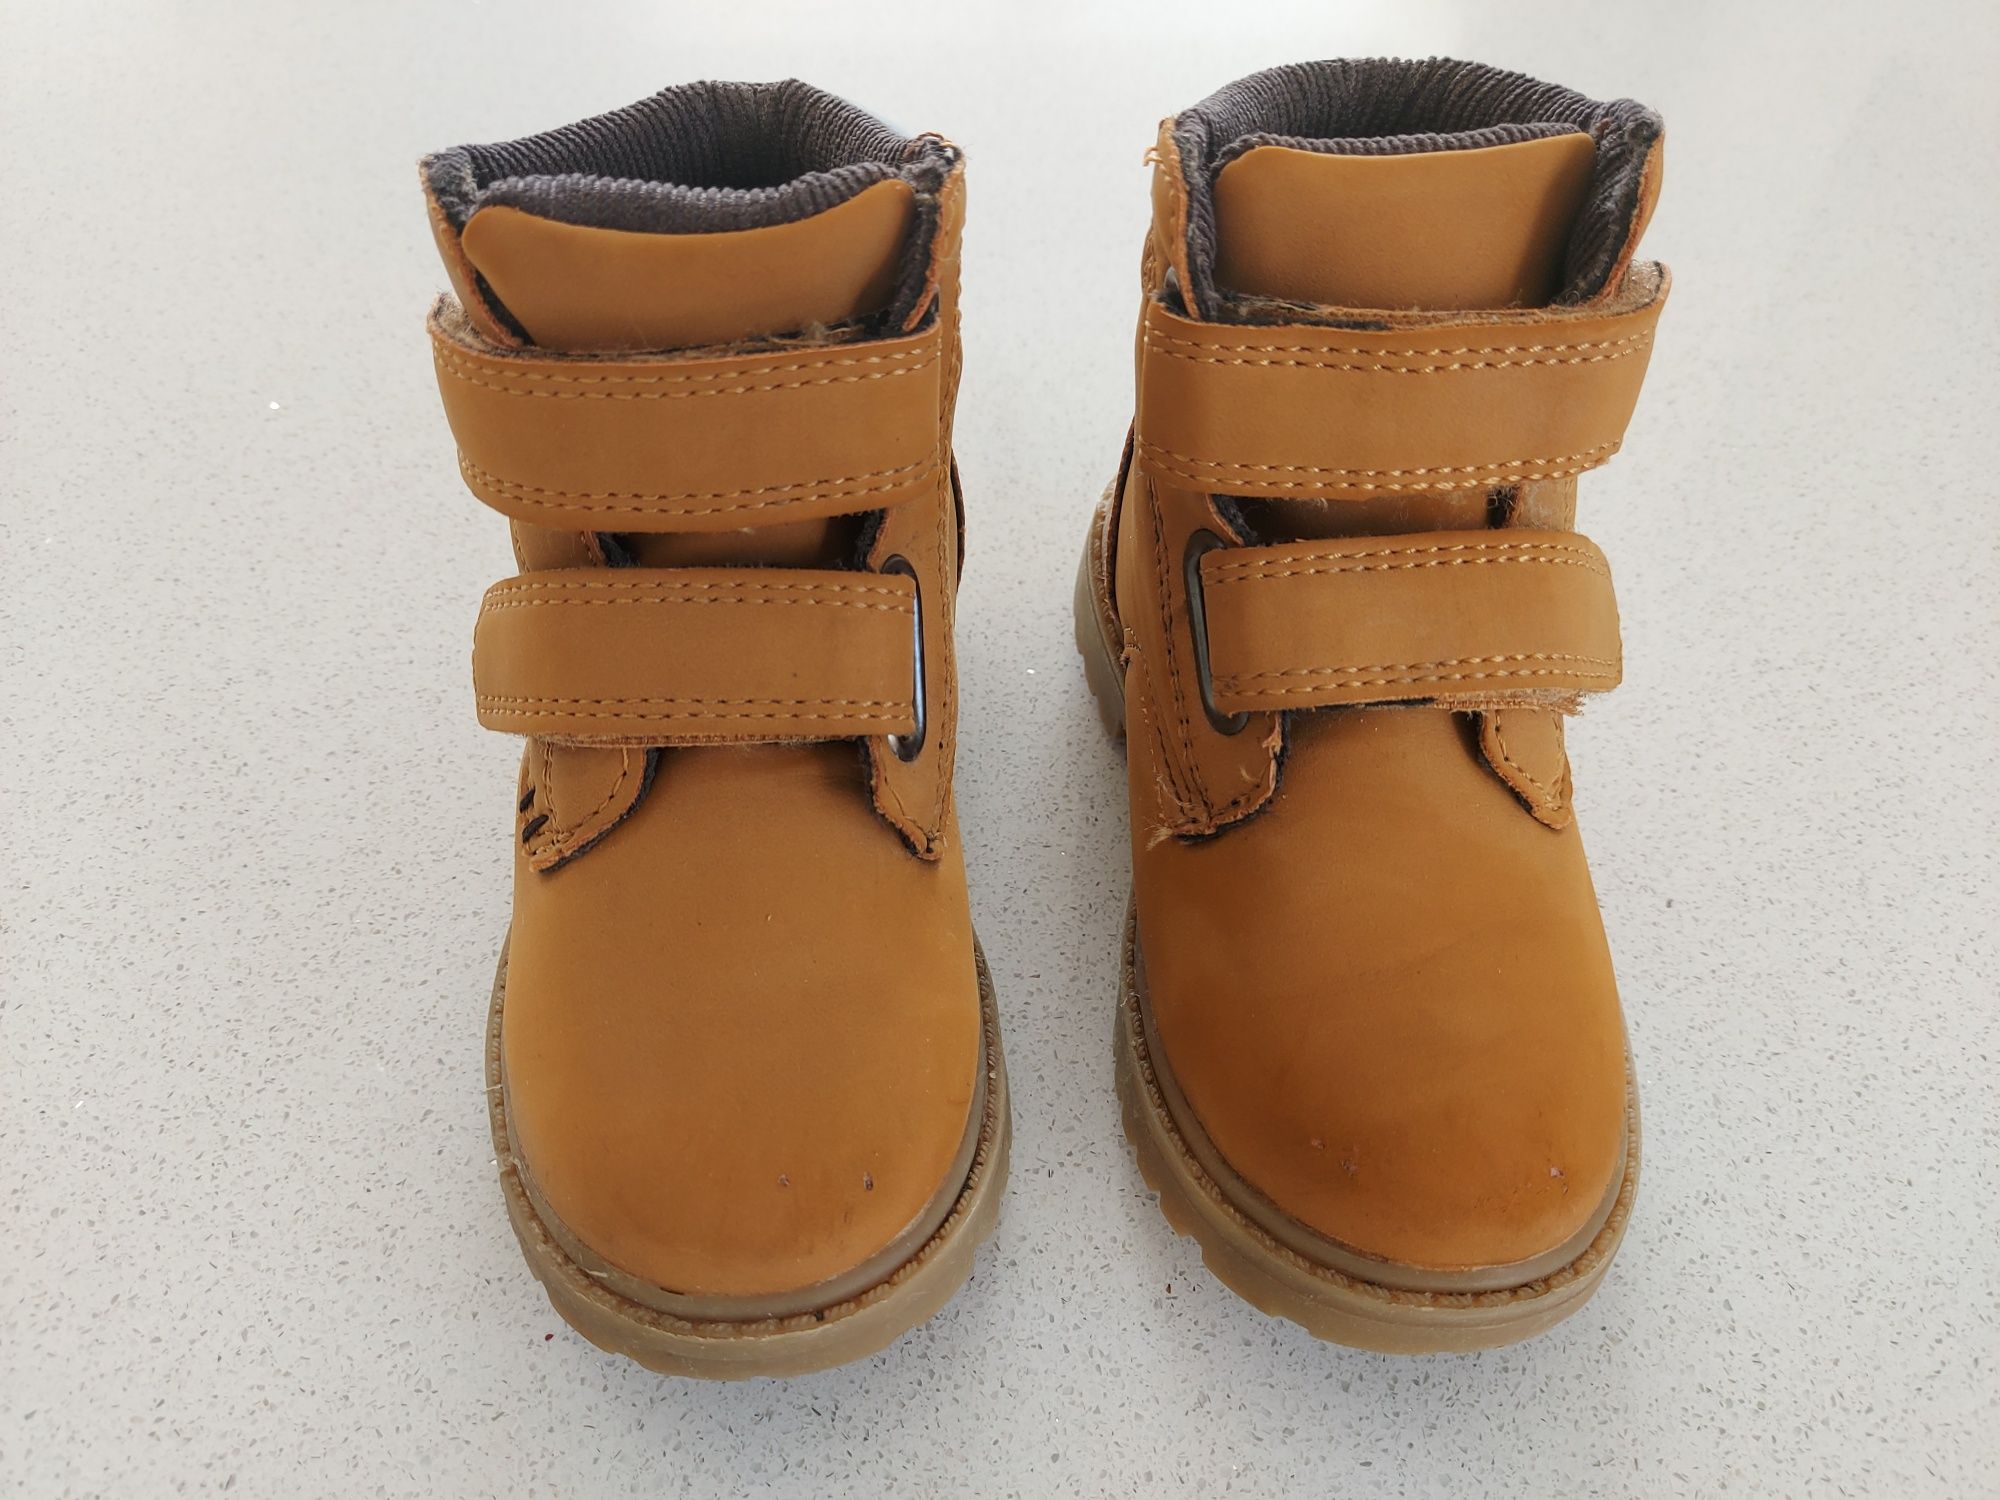 Zimowe buty botki Reserved / kozaki za kostkę r. 22 /23 (14,5 cm), UK